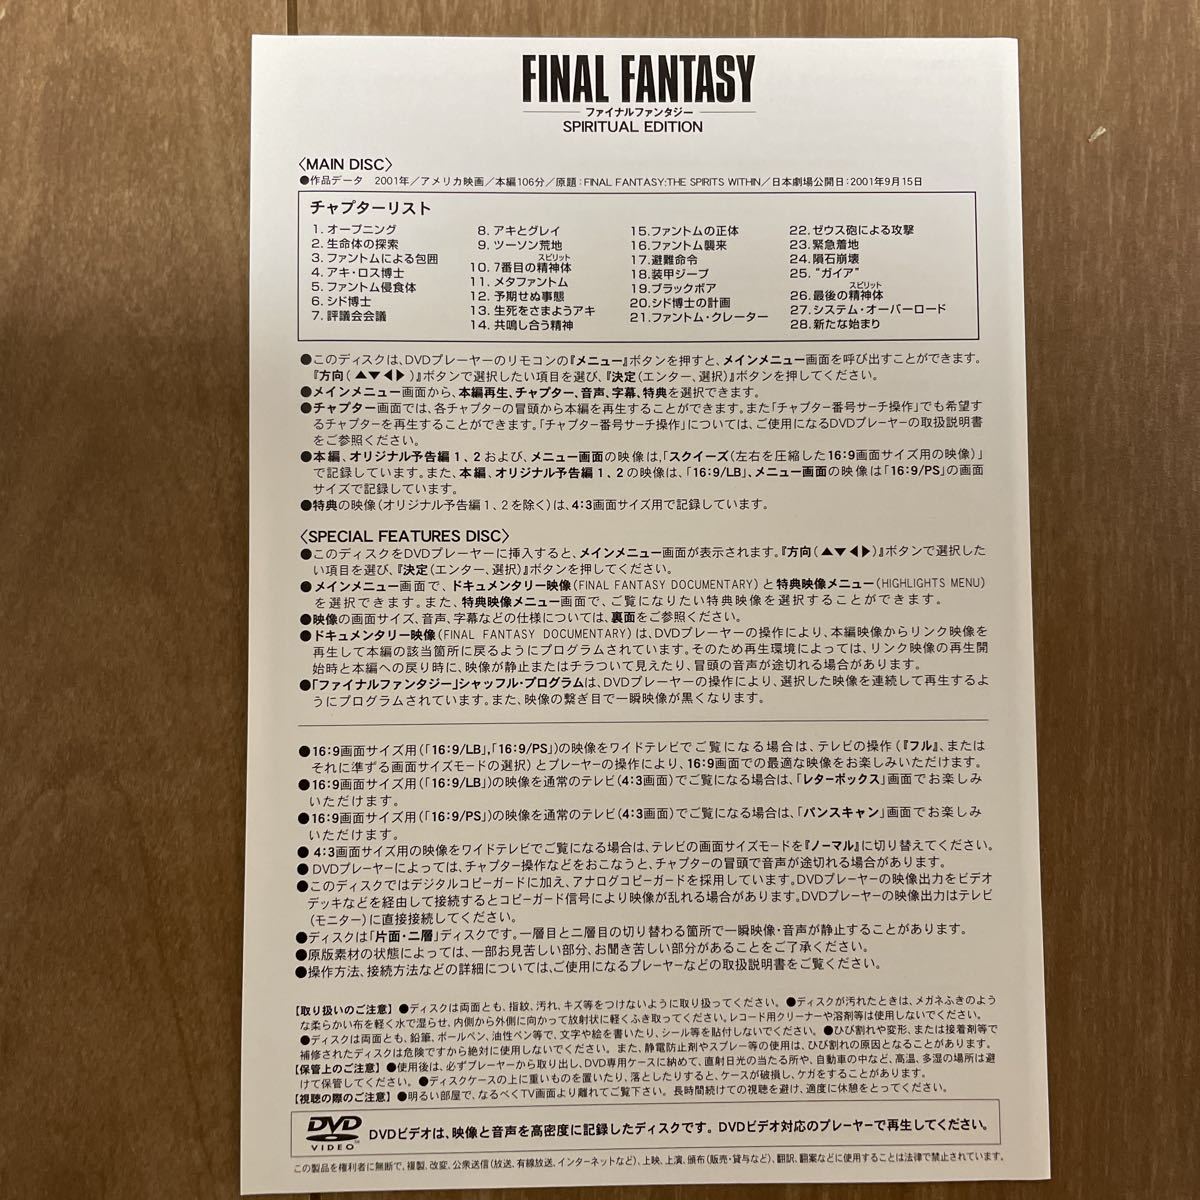 ファイルファンタジー スピリチュアル エディション 映画 DVD FINAL FANTASY ゲーム_画像4